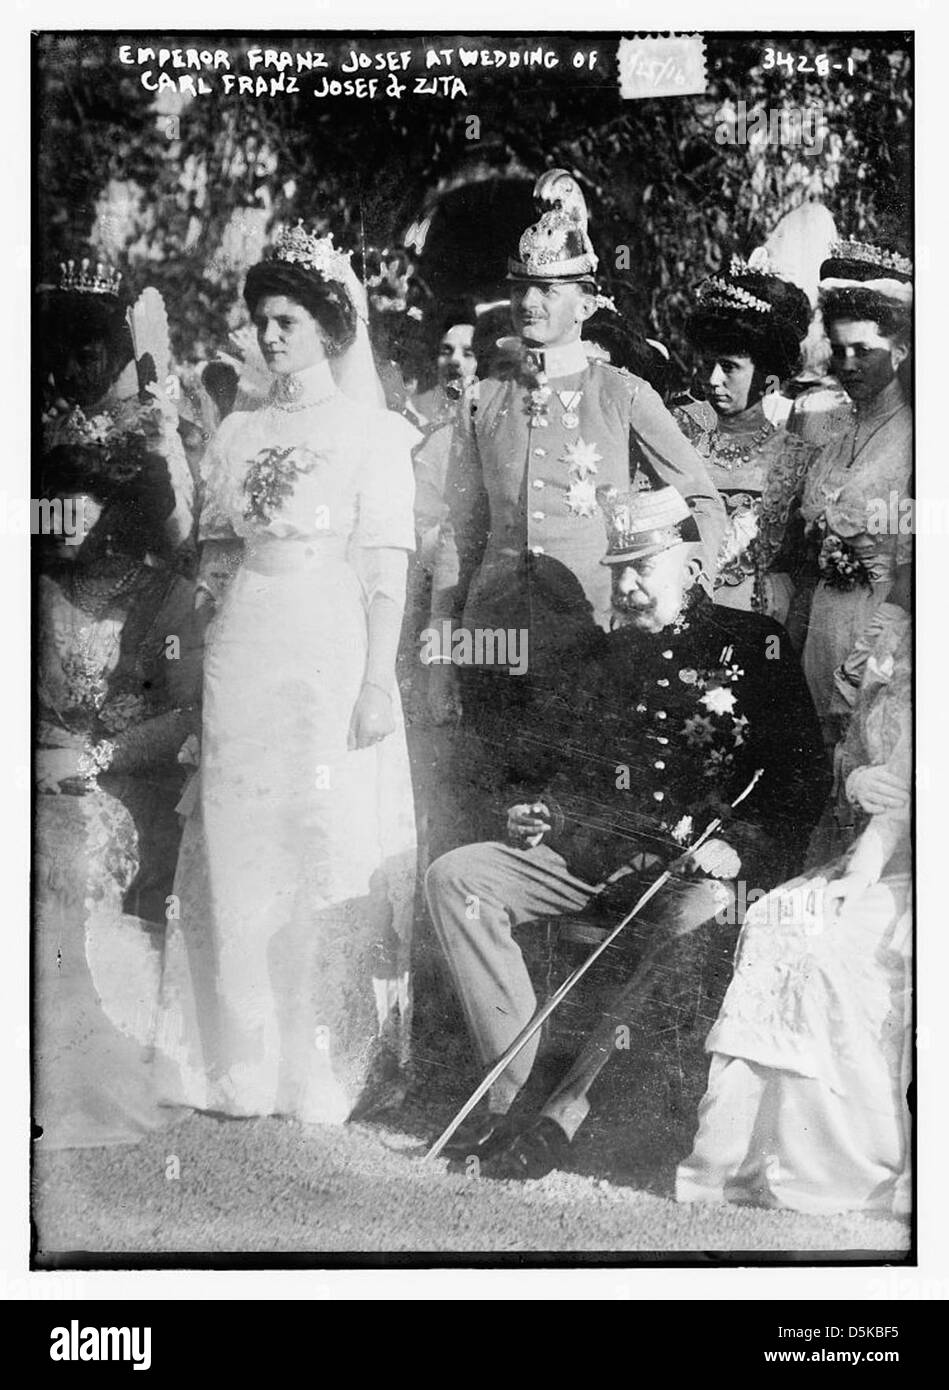 L'imperatore Franz Josef al matrimonio di Carl Franz Josef e Zita (LOC) Foto Stock